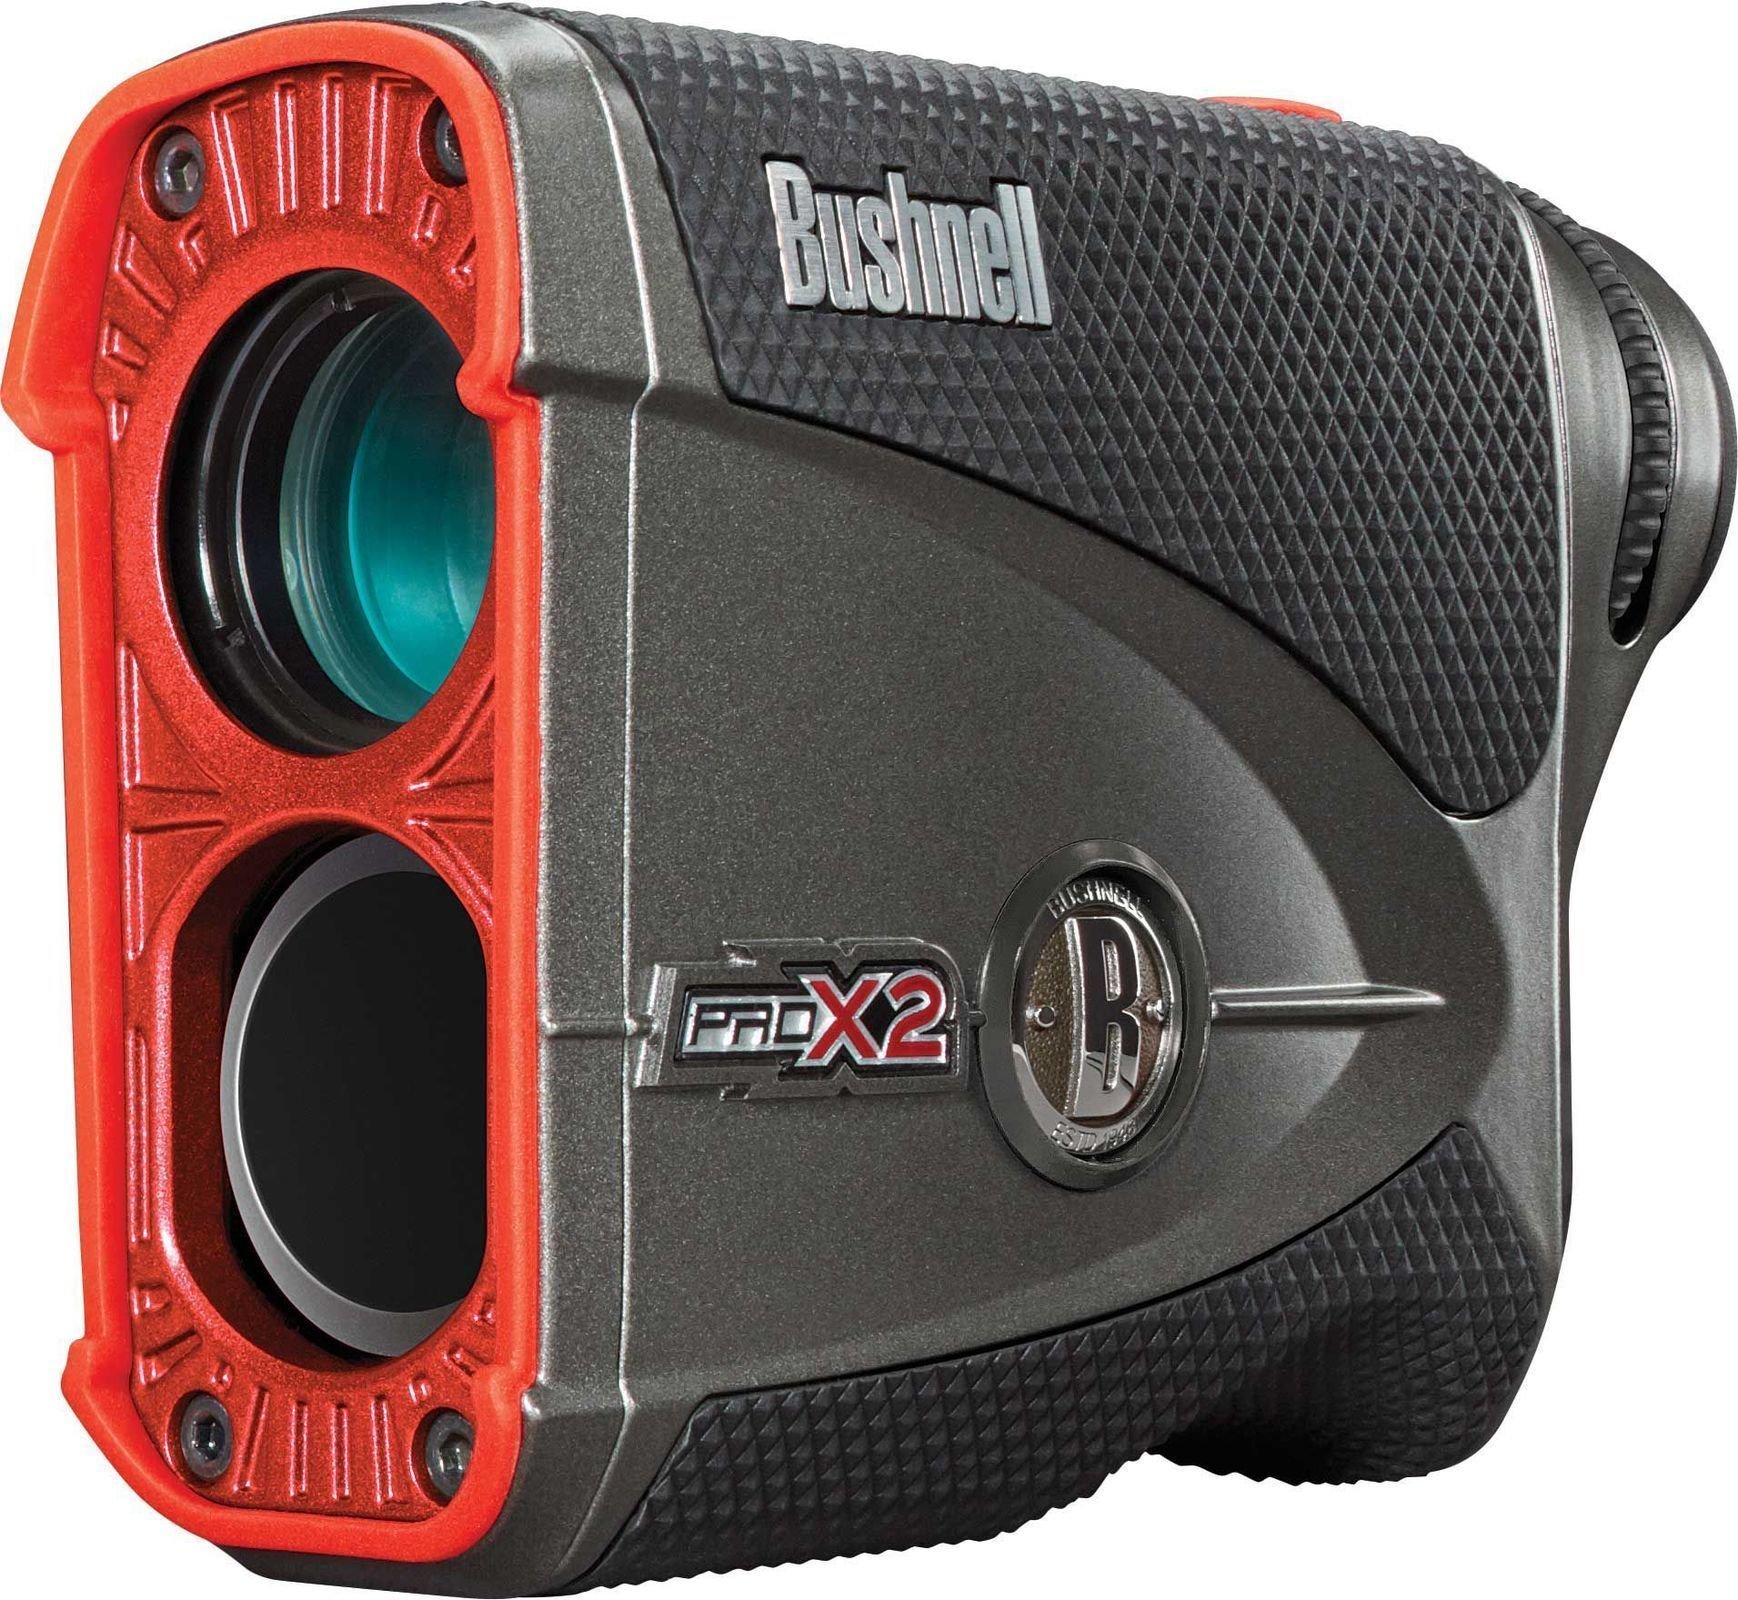 Laser afstandsmåler Bushnell PRO X2